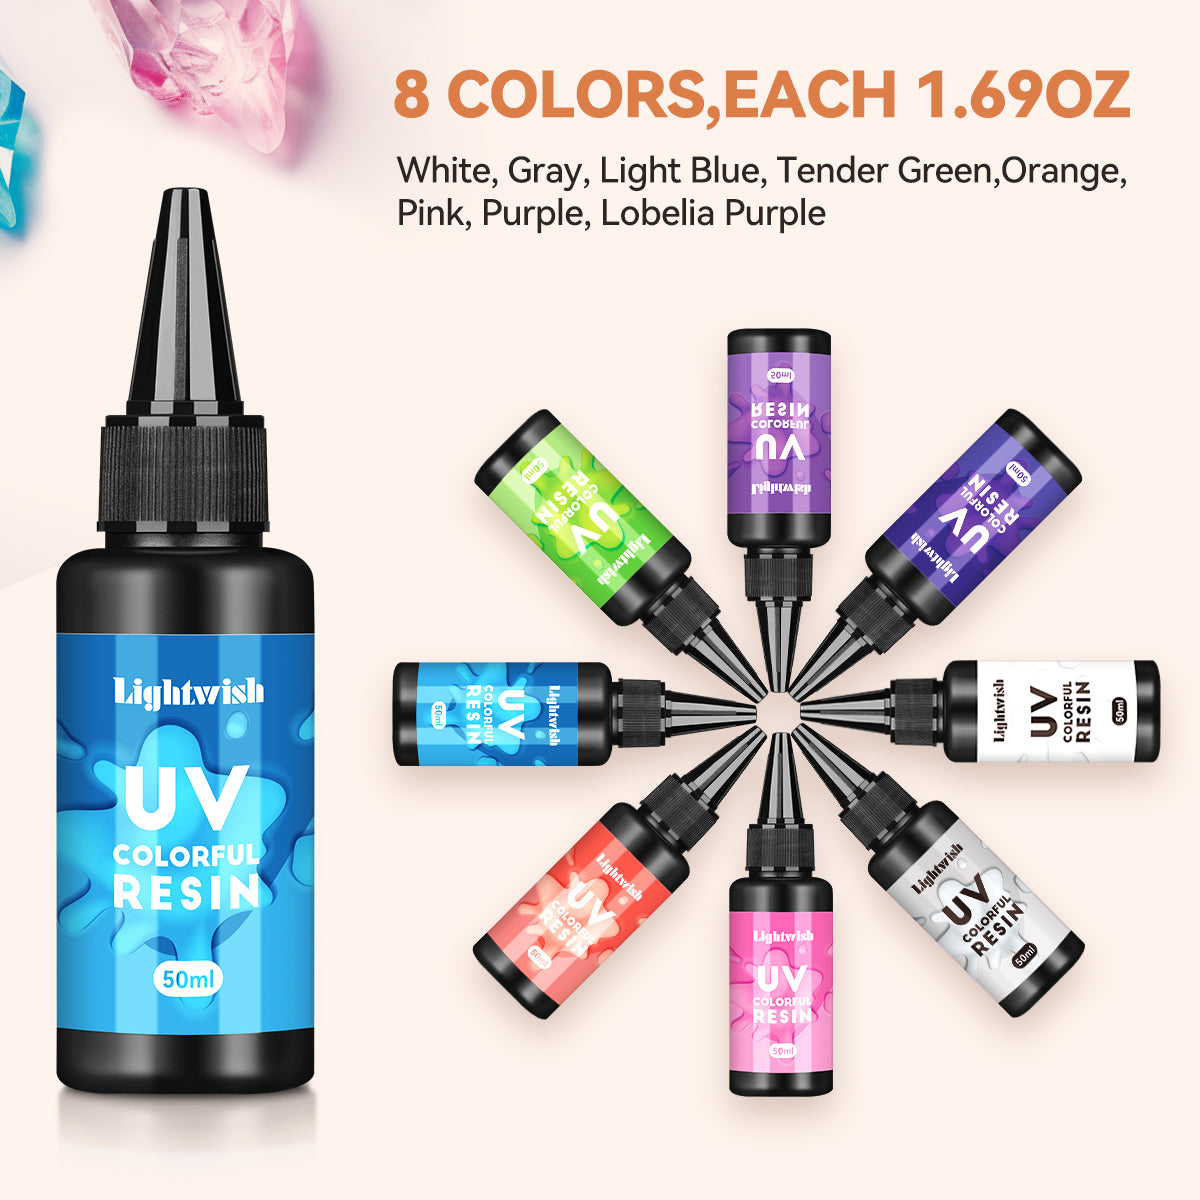 Résine UV colorée, kit de résine UV 8 couleurs (50 g chacune)